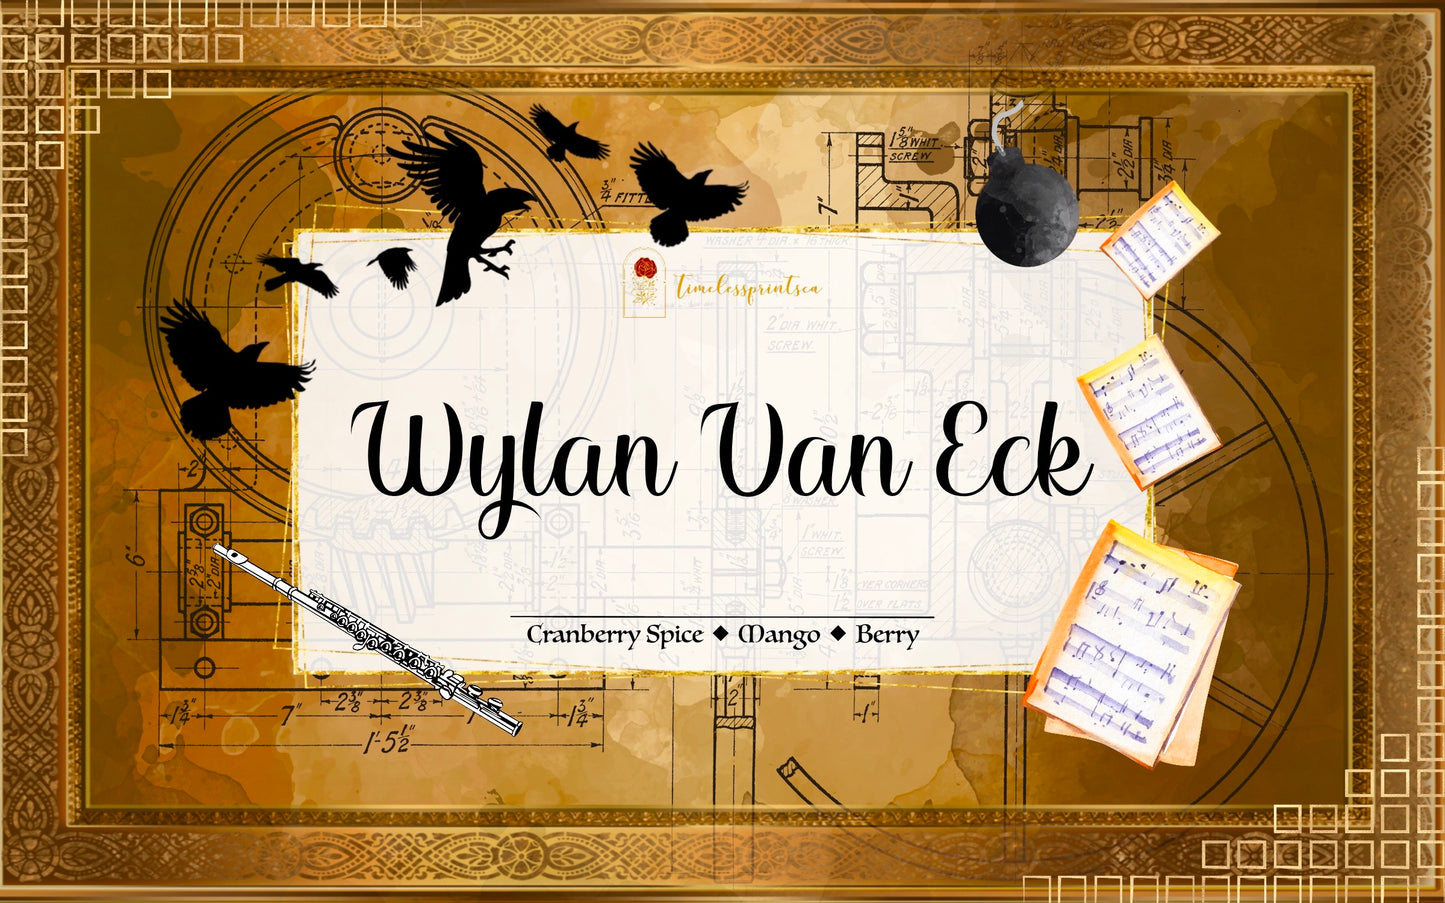 Wylan Van Eck